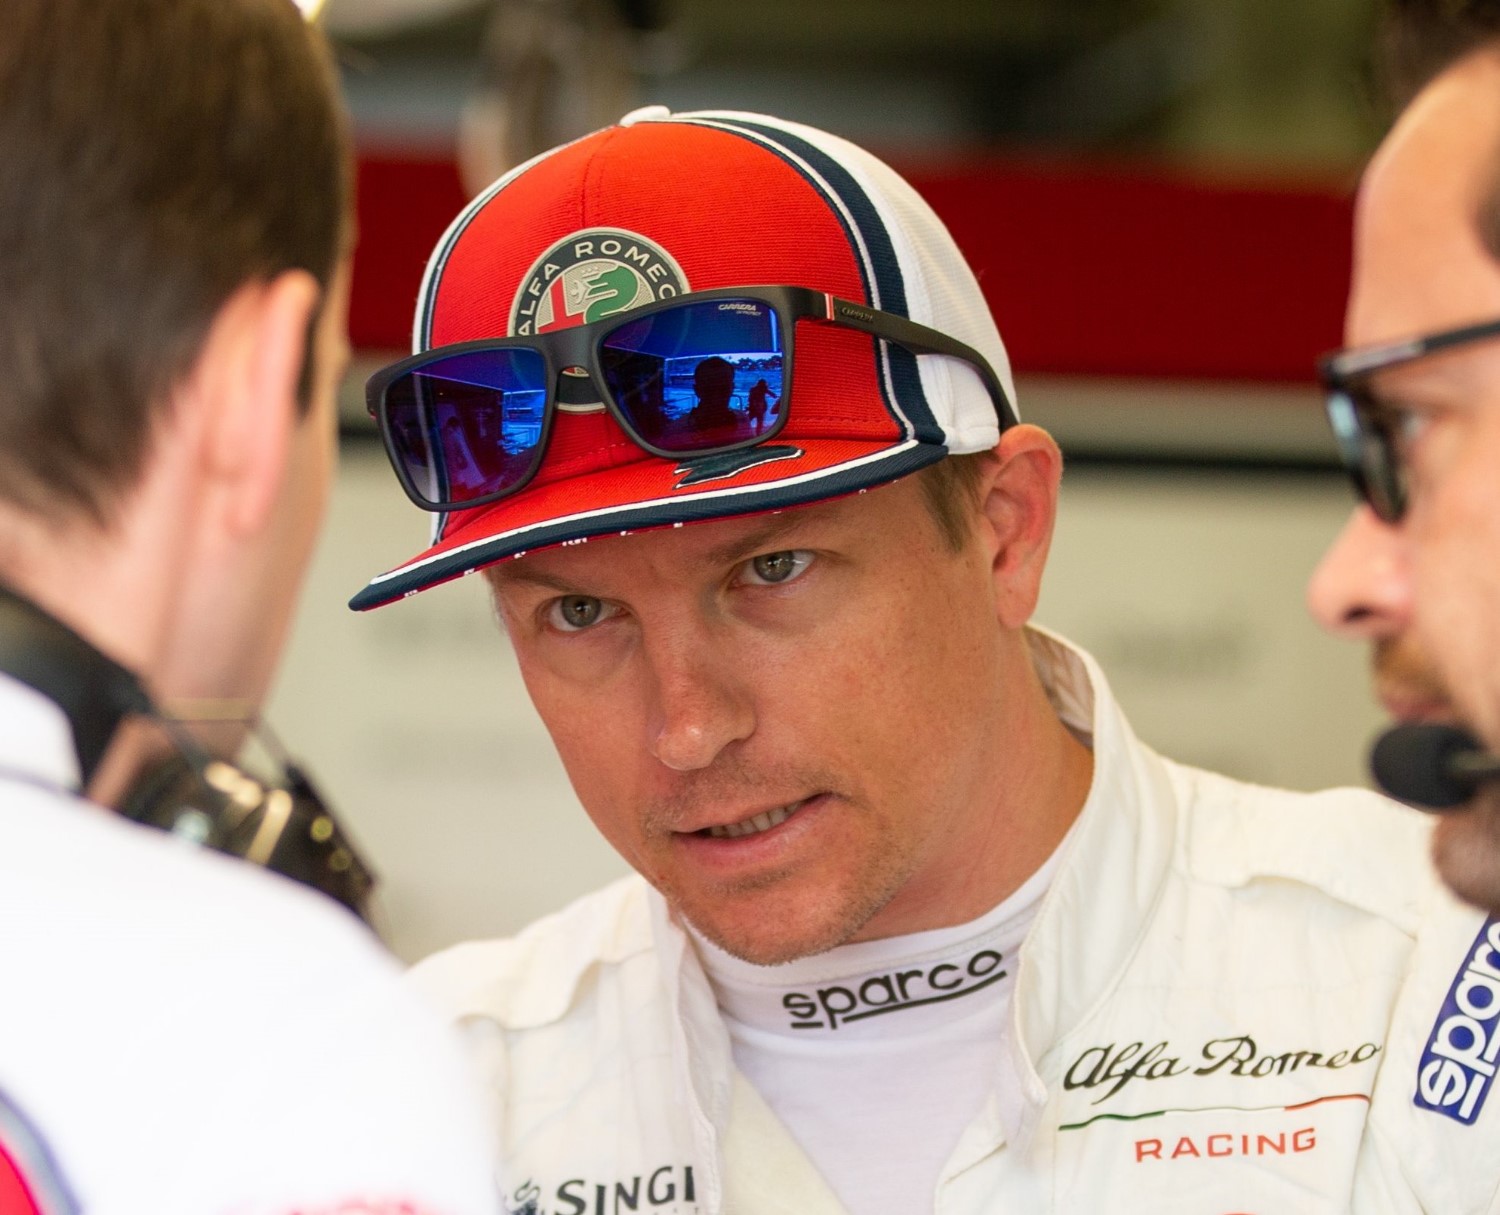 It's time for Kimi Raikkonen to retire now